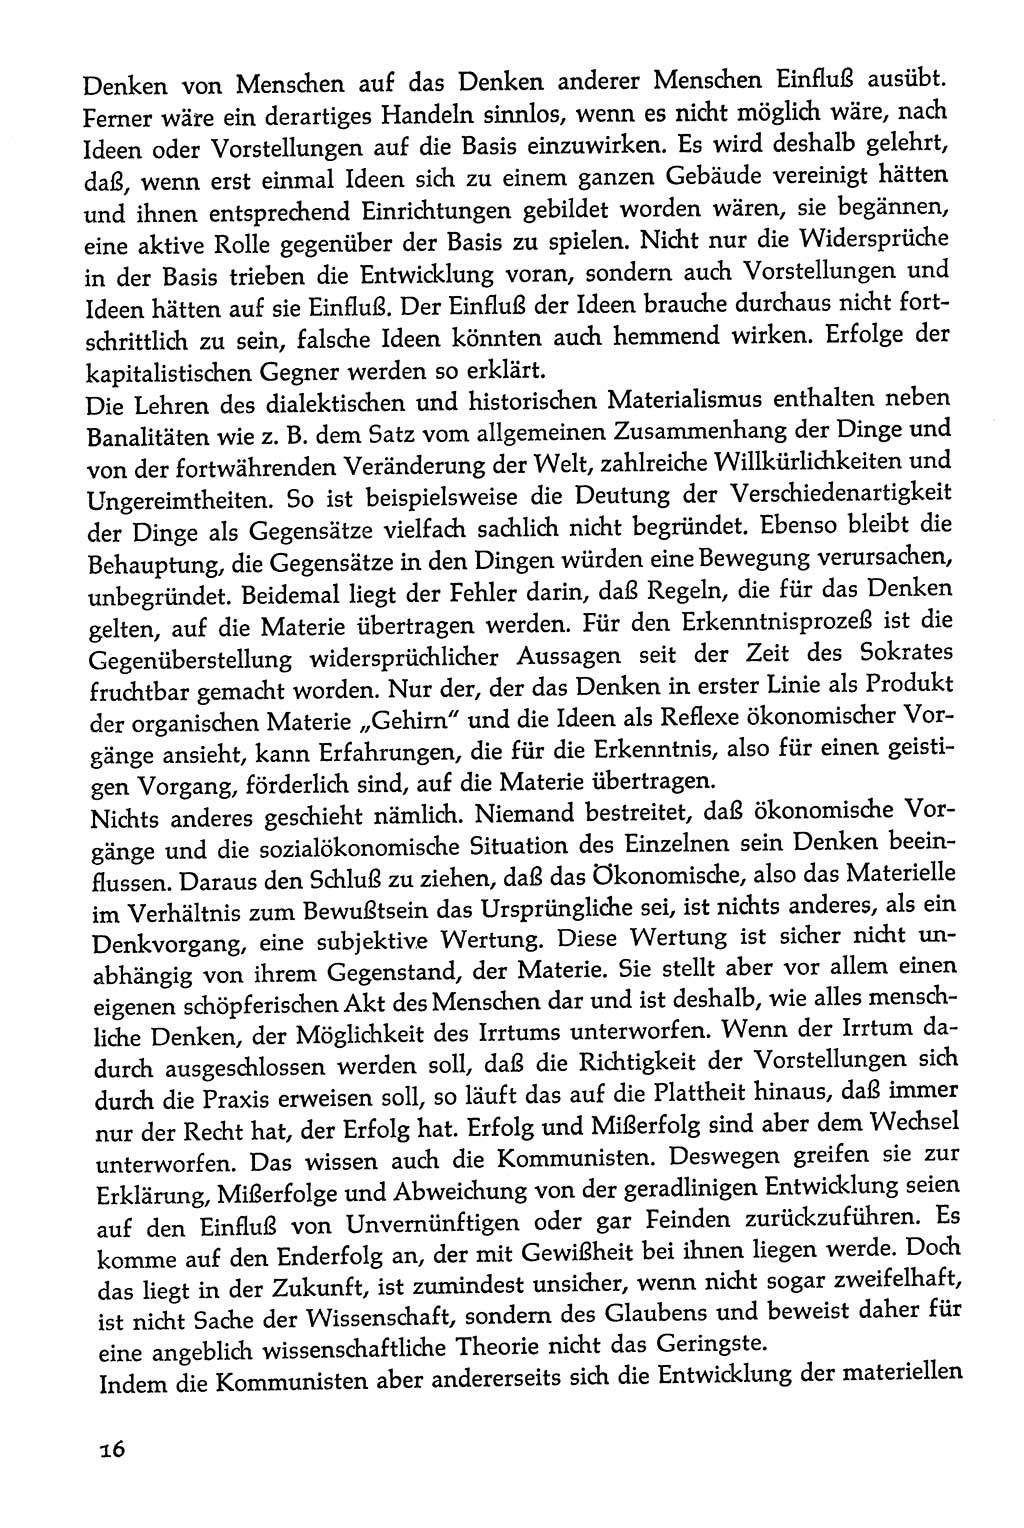 Volksdemokratische Ordnung in Mitteldeutschland [Deutsche Demokratische Republik (DDR)], Texte zur verfassungsrechtlichen Situation 1963, Seite 16 (Volksdem. Ordn. Md. DDR 1963, S. 16)